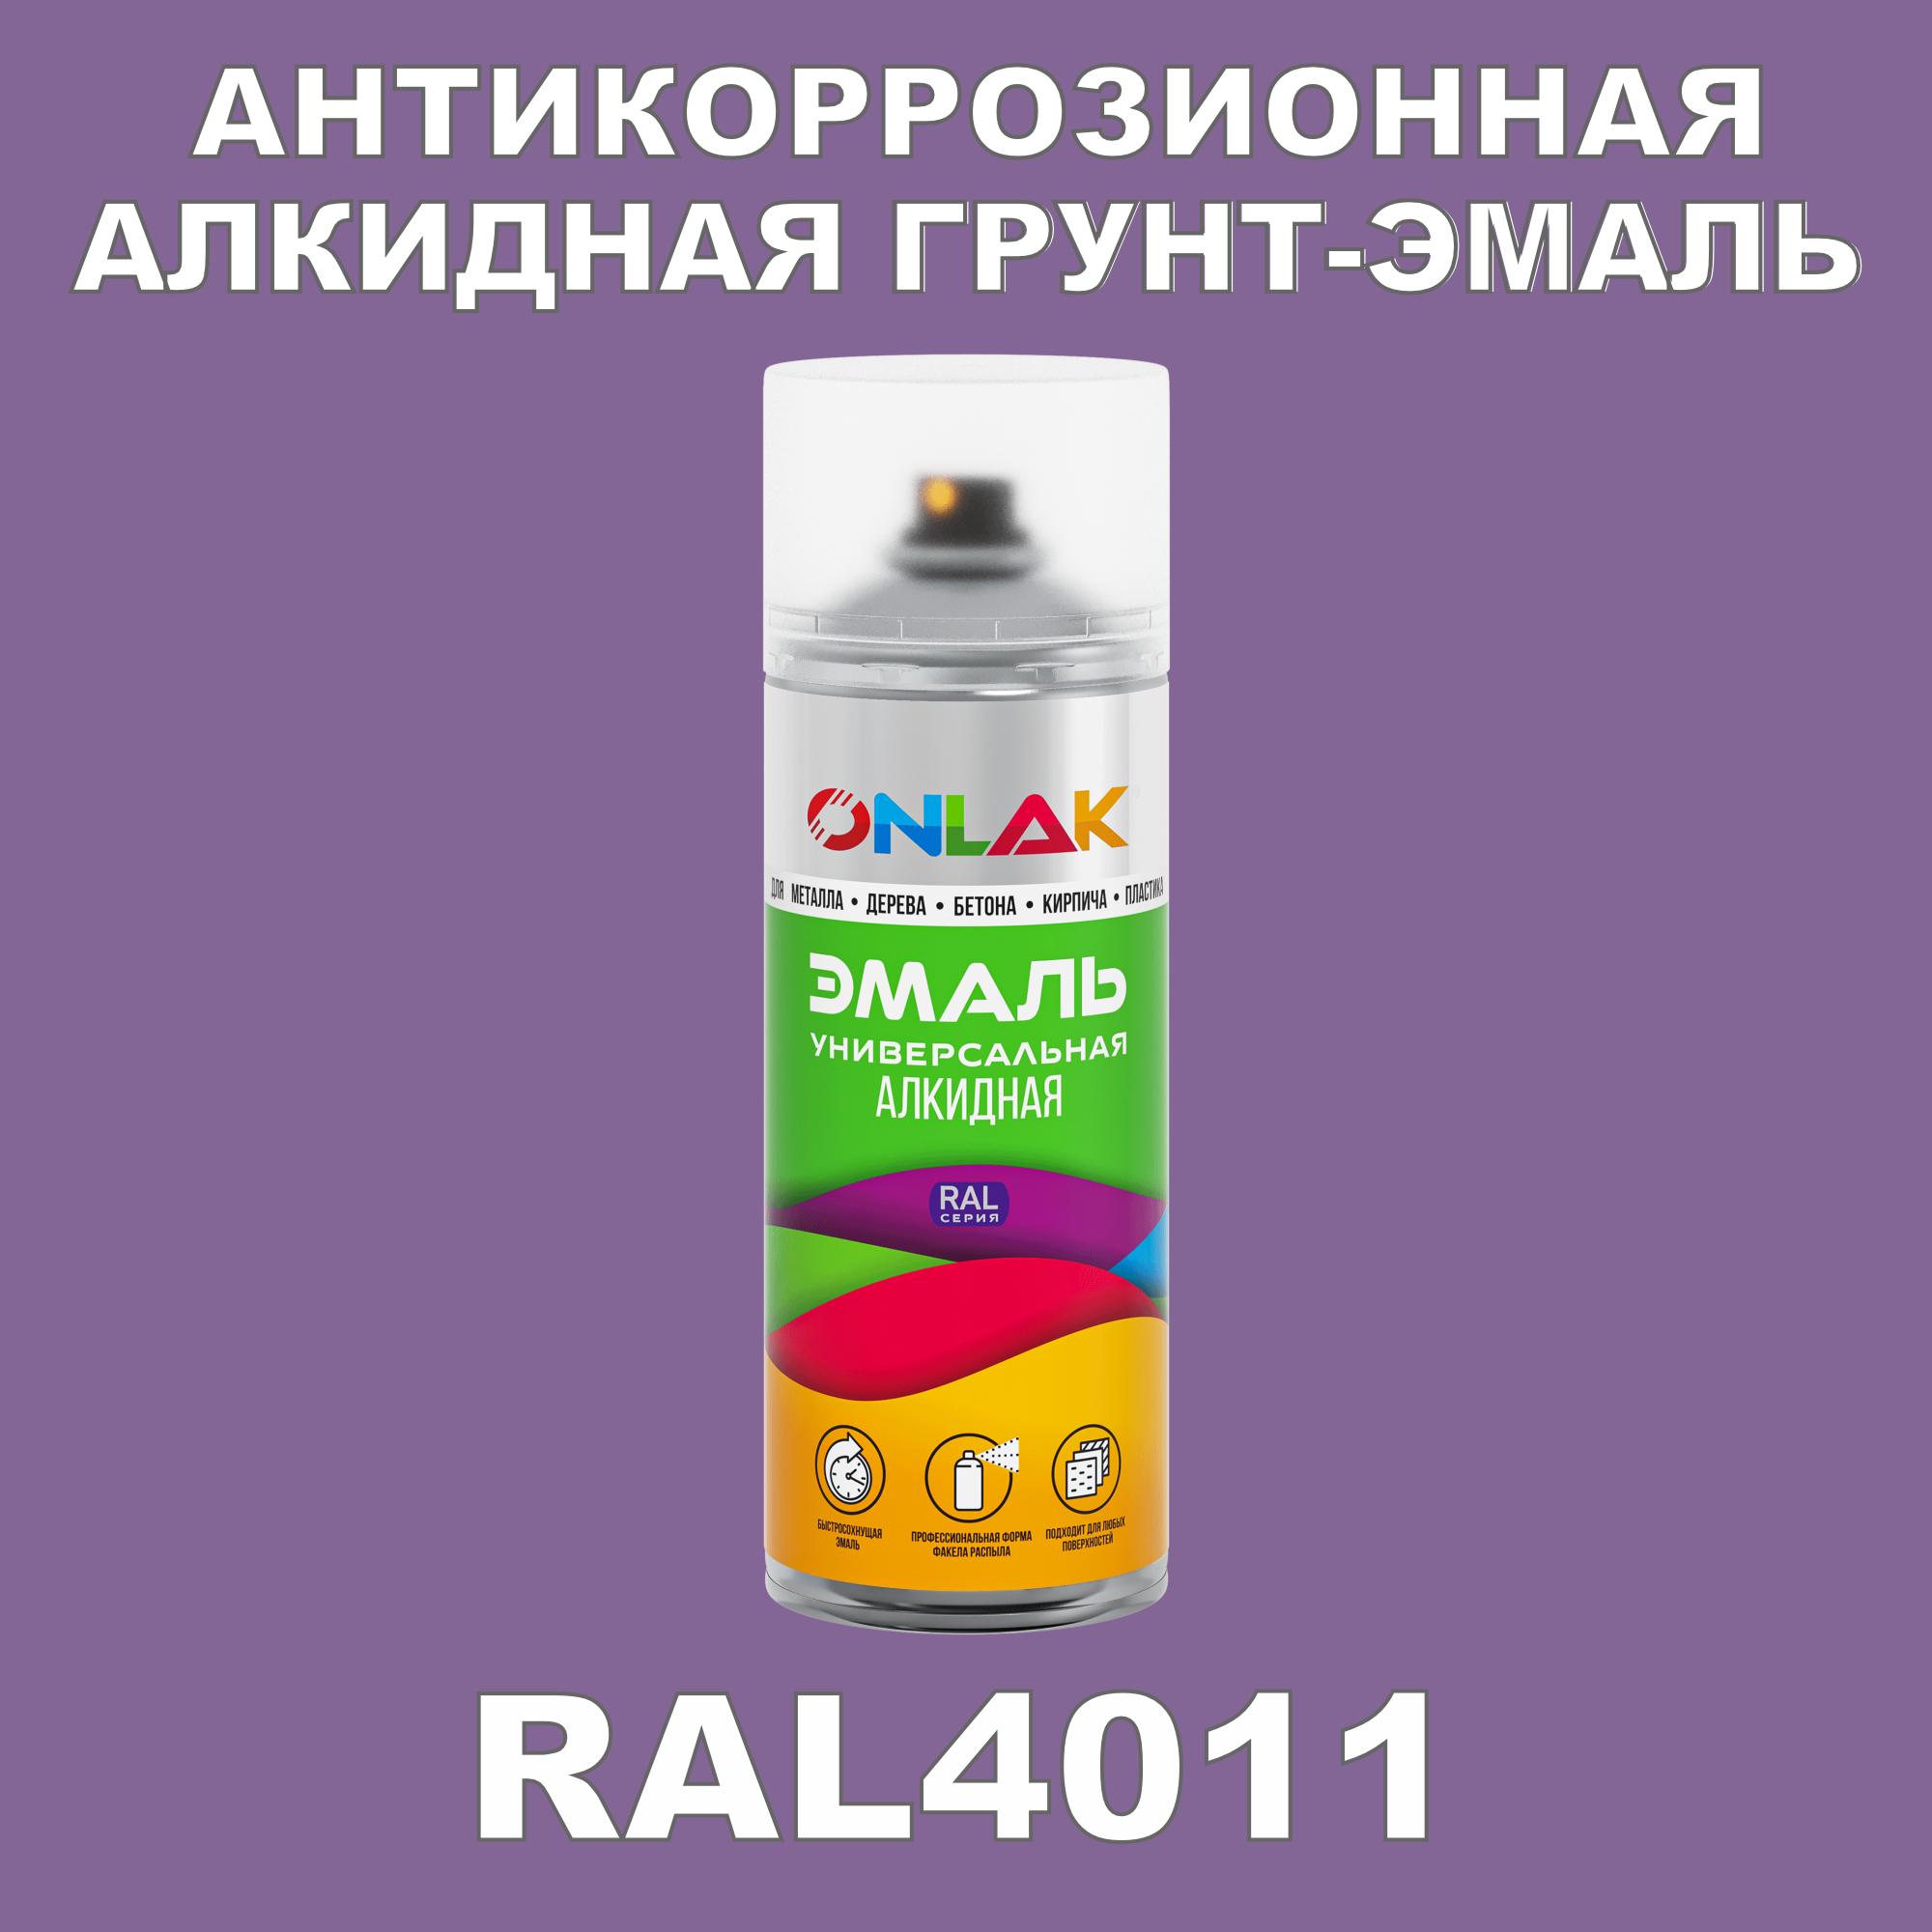 Антикоррозионная грунт-эмаль ONLAK RAL 4011,фиолетовый,550 мл рюкзак на молнии 2 наружных кармана розовый фиолетовый